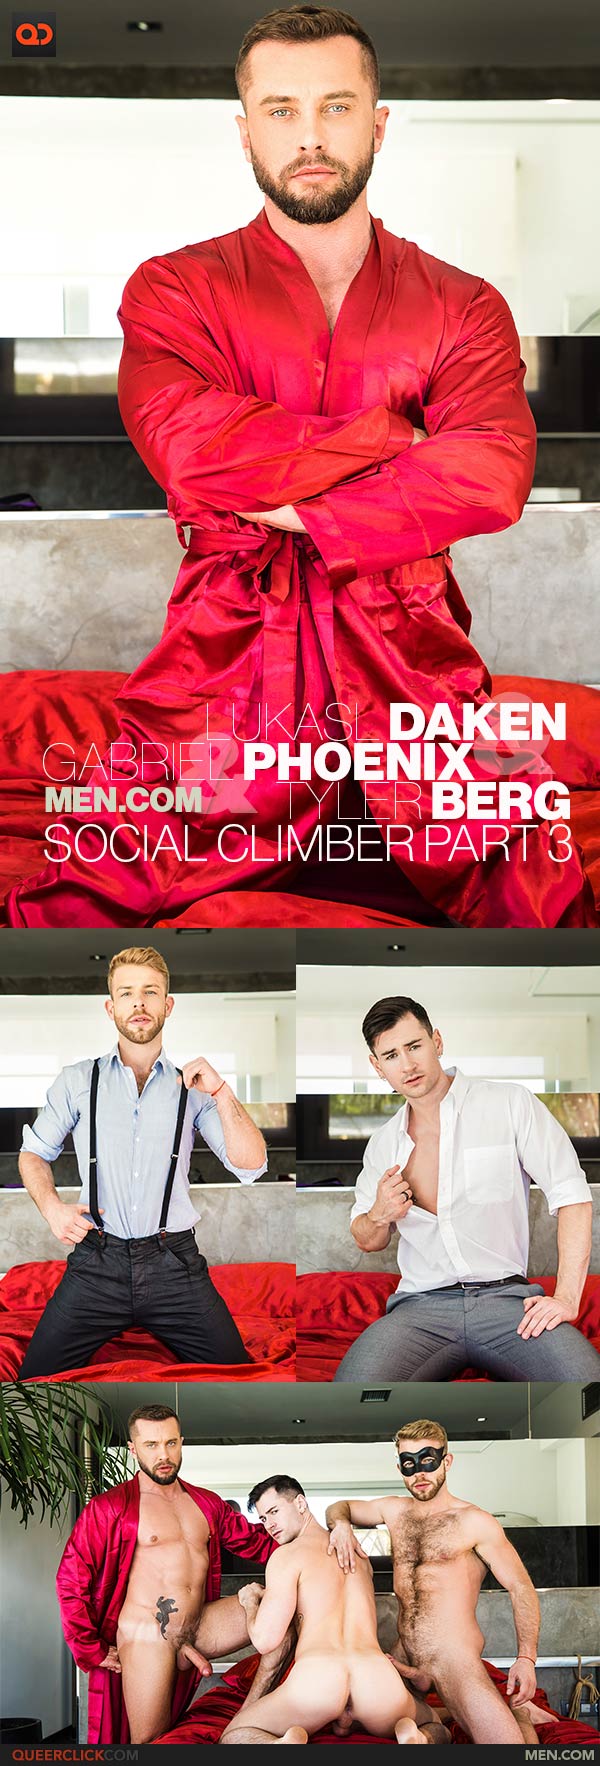 Men.com: Tyler Berg, Lukas Daken and Grabriel Phoenix